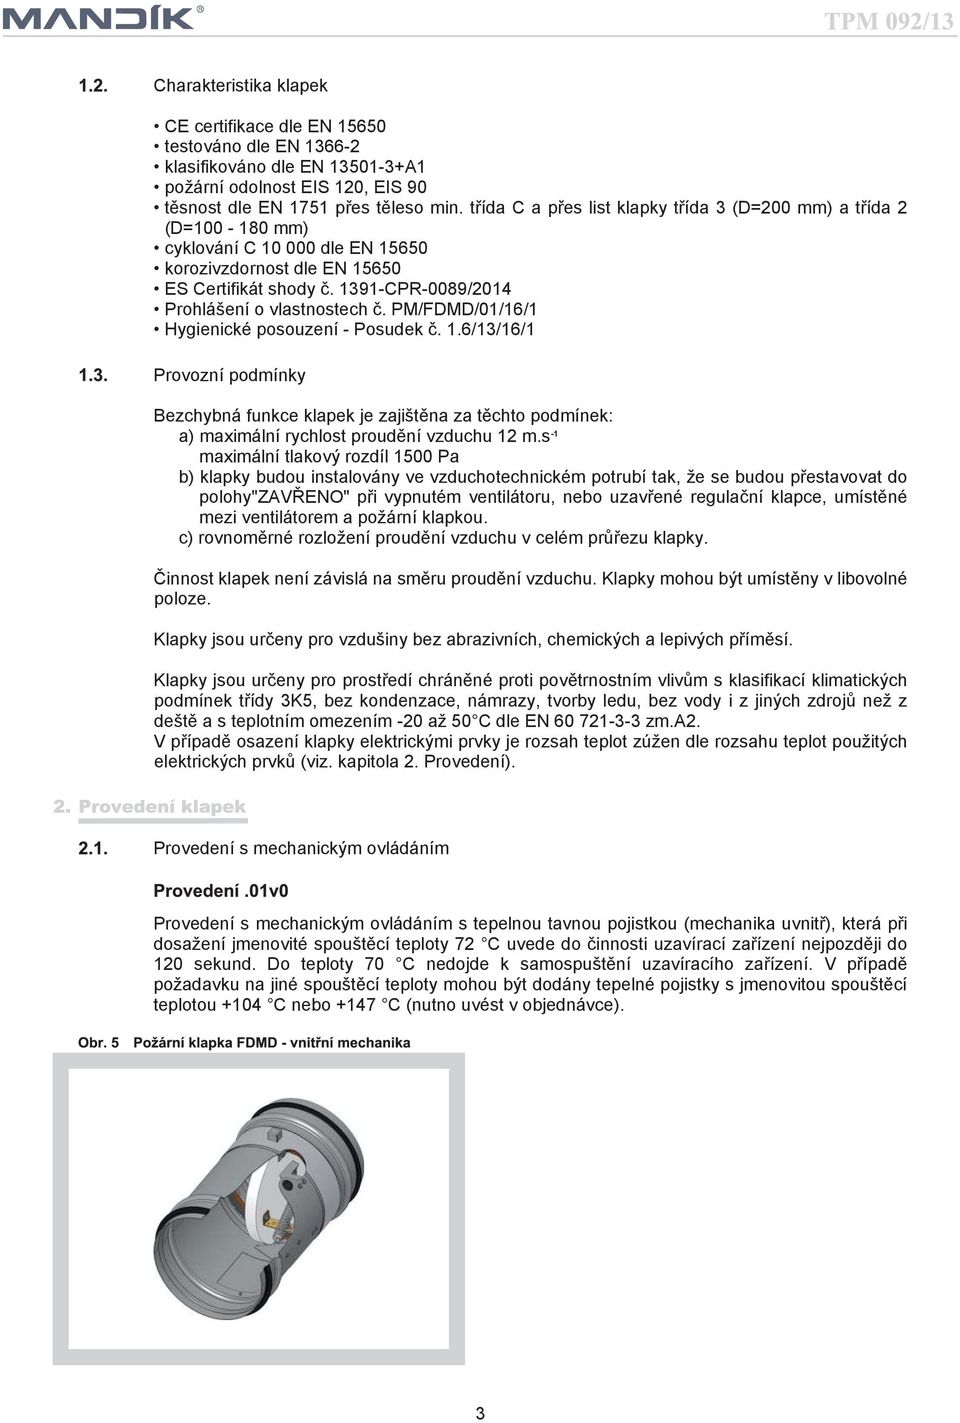 1391-CPR-0089/2014 Prohlášení o vlastnostech č. PM/FDMD/01/16/1 Hygienické posouzení - Posudek č. 1.